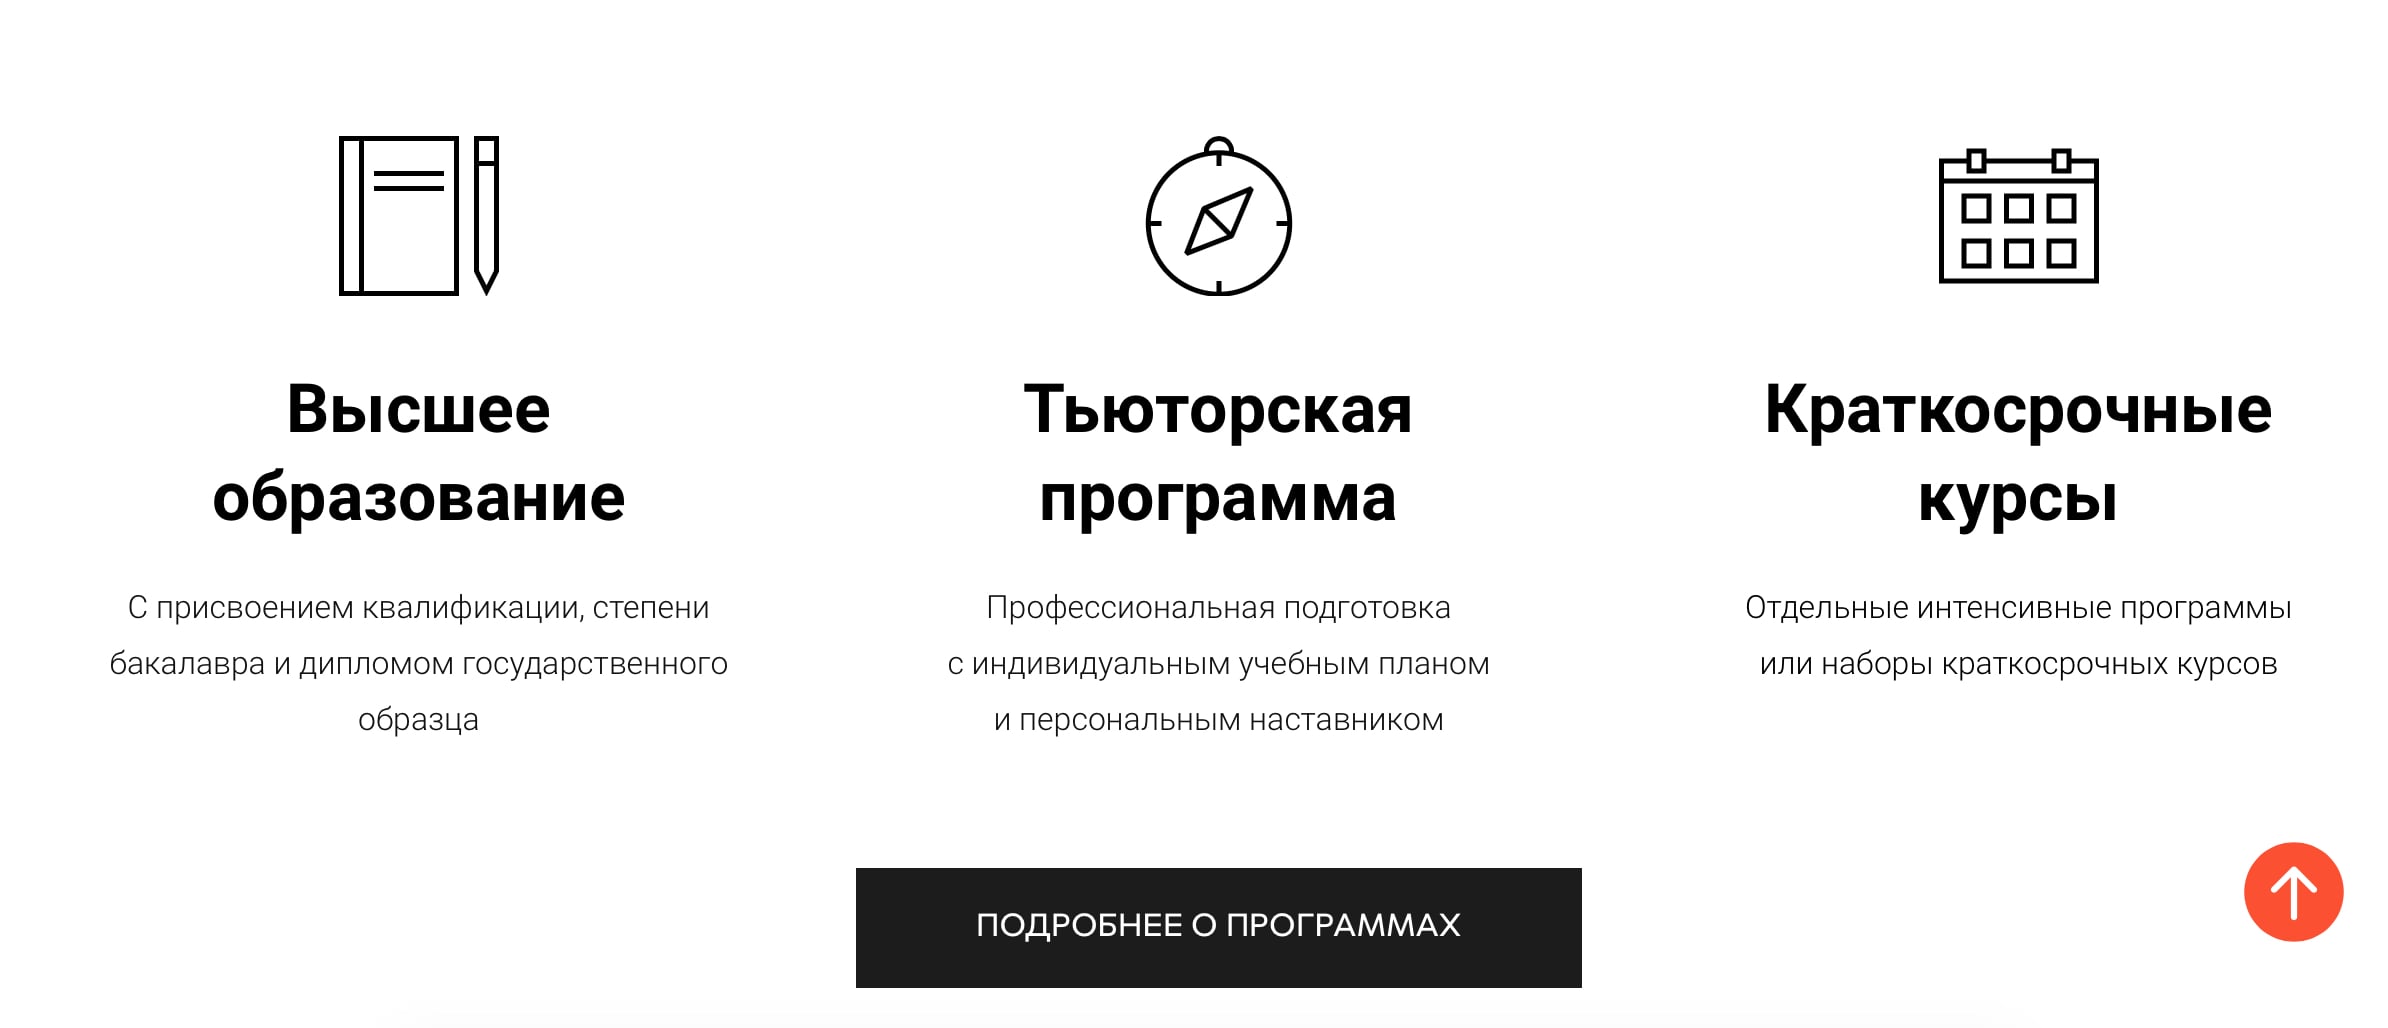 Среда Обучения (sredaobuchenia.ru), скриншот интерфейса 4